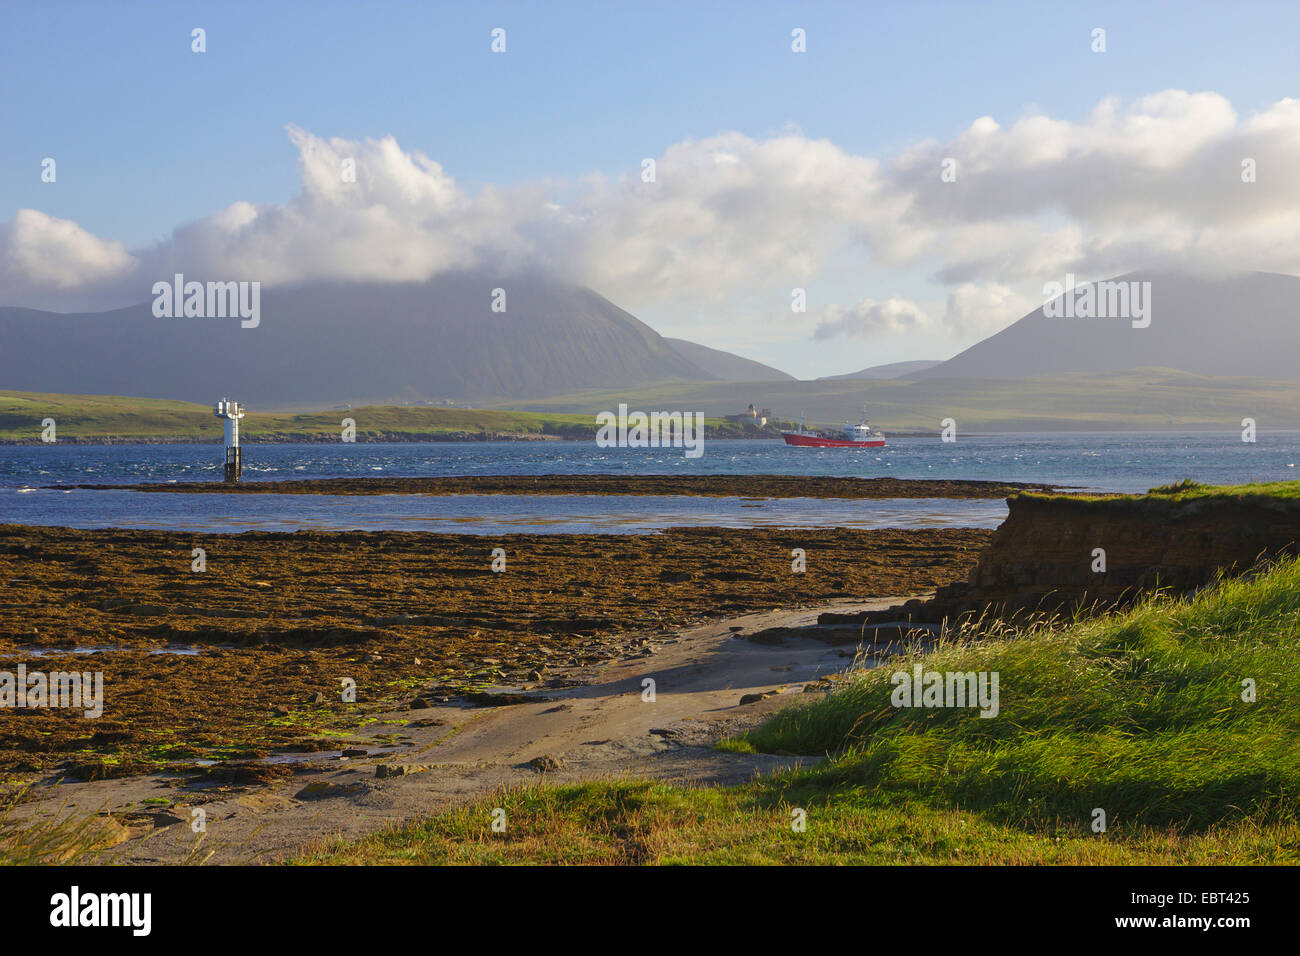 Vista attraverso la punta meridionale di Orkney continentale, Ness punto isola Hoy, Regno Unito, Scozia, isole Orcadi, Orkney continentale Foto Stock